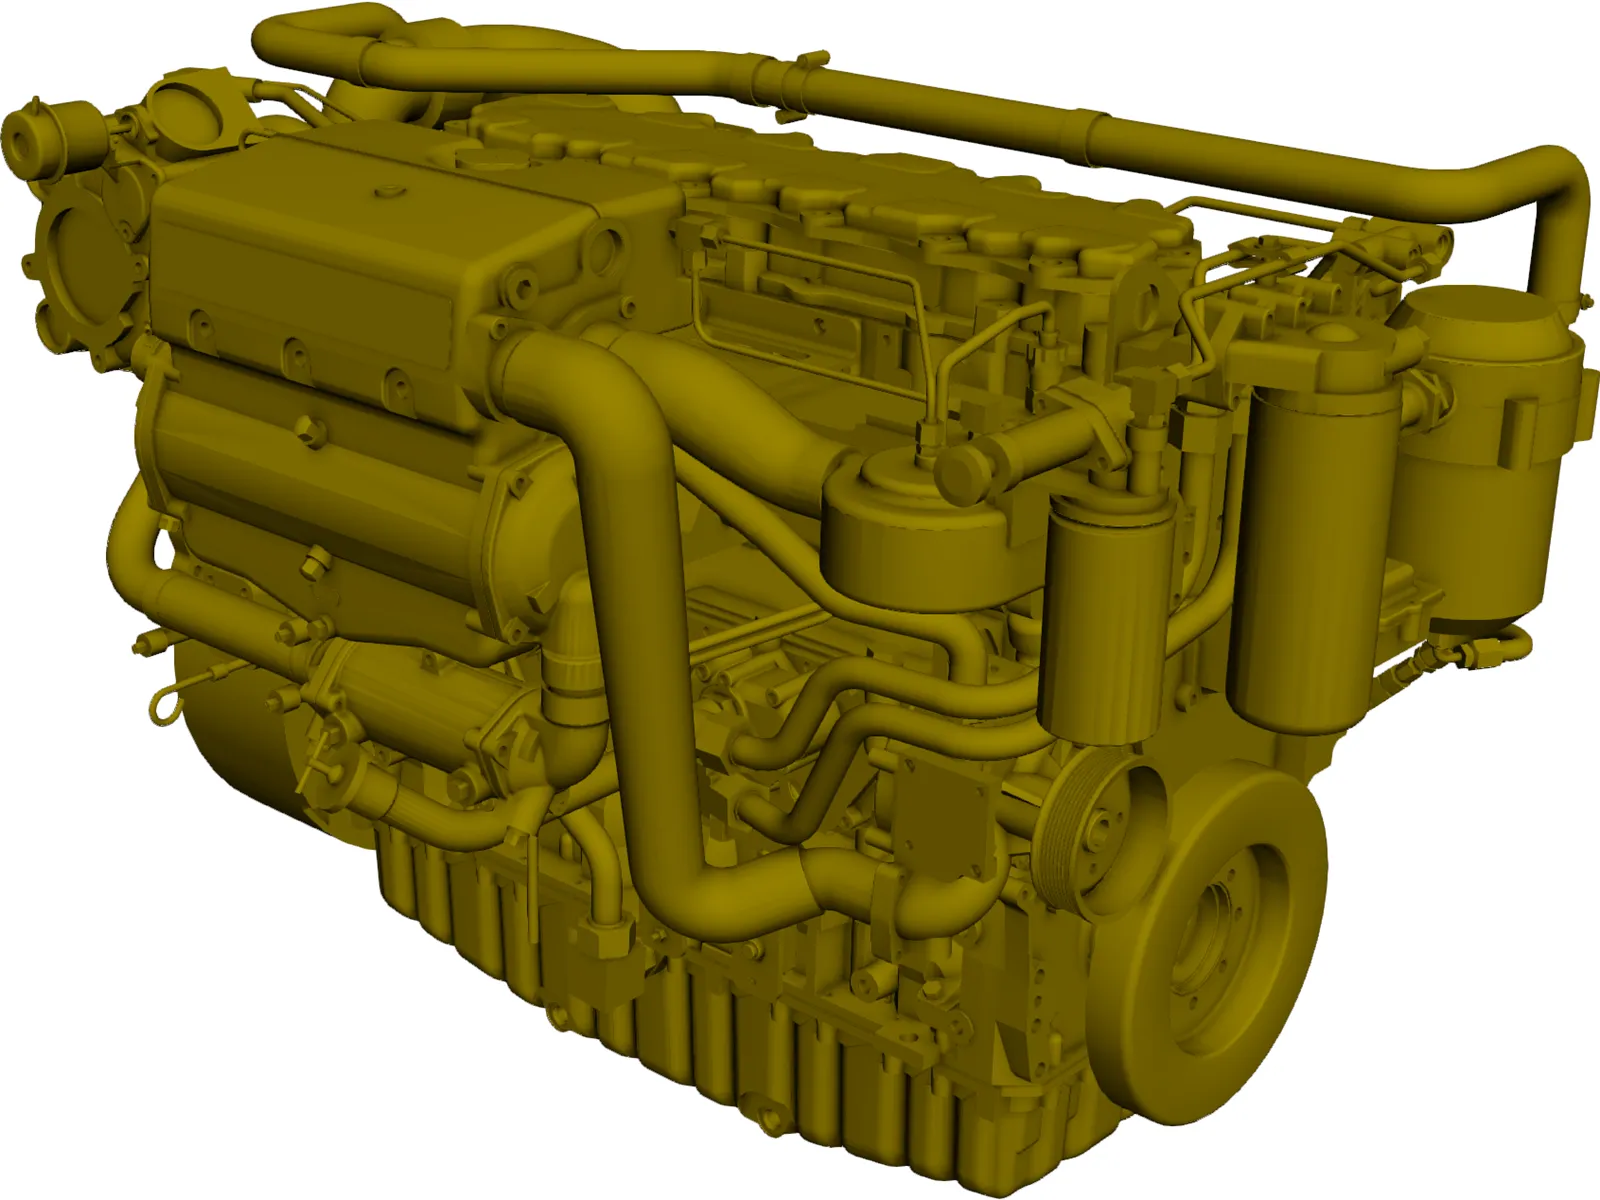 Cat C7 Engine 3D Model